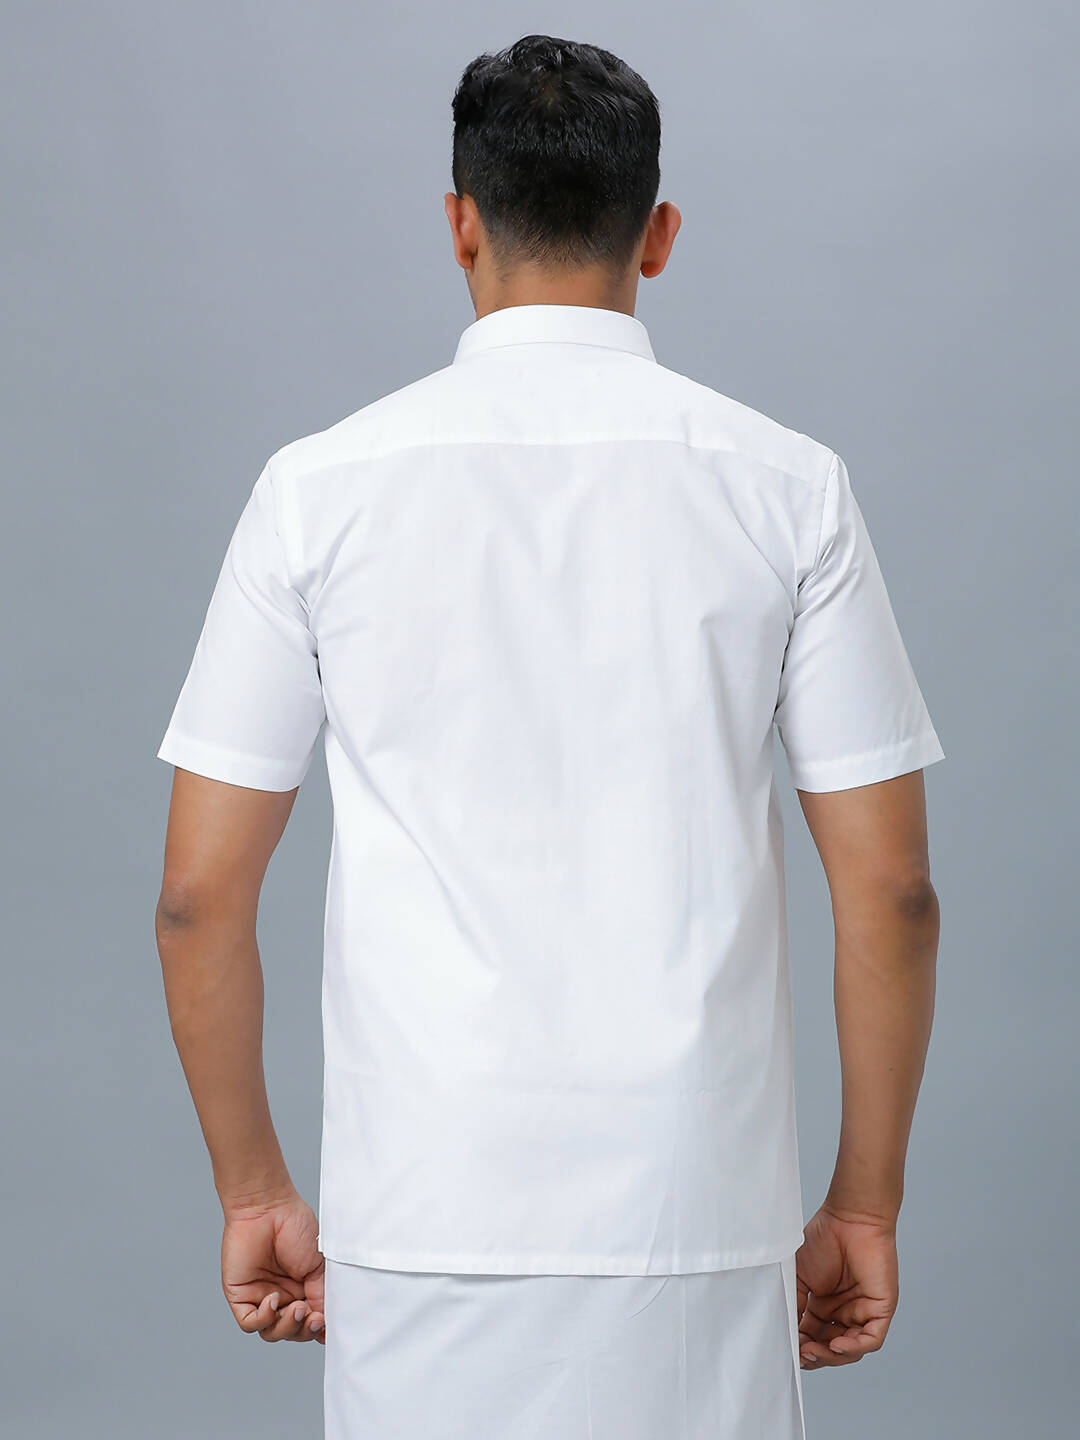 Buy Ramraj Cotton Mens Half Sleeve Formal 100% Cotton White Shirt